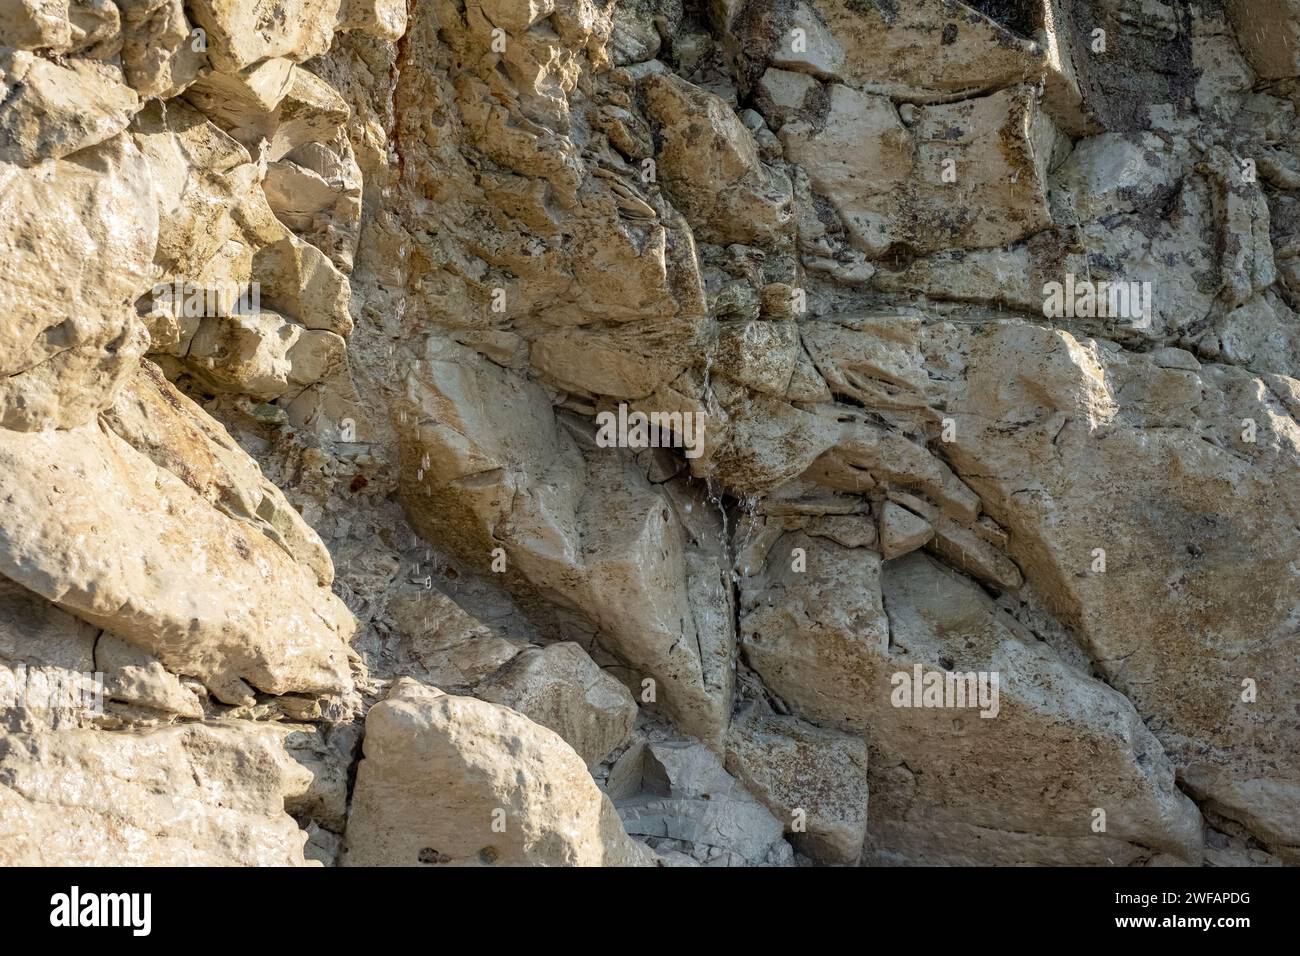 Das Bild ist eine Nahaufnahme einer Klippe, die die komplexen geologischen Formationen und das Zusammenspiel verschiedener Gesteinsarten zeigt. Jede Schicht erzählt eine andere Geschichte der alten Geschichte der Klippe, mit Sedimentationsmustern, Erosionsprozessen und Mineralablagerungen. Die Textur ist detailreich, mit scharfen Kontrasten zwischen den rauen, zerklüfteten Kanten und den glatteren Oberflächen, was ein Gefühl des Charakters der Klippe vermittelt. Das Foto dient als lehrreicher Einblick in die Naturgeschichte, die in die Erdkruste eingeätzt ist. Geologische Wandteppiche: Die Erzählung der Klippen. Hohe Qualität Stockfoto